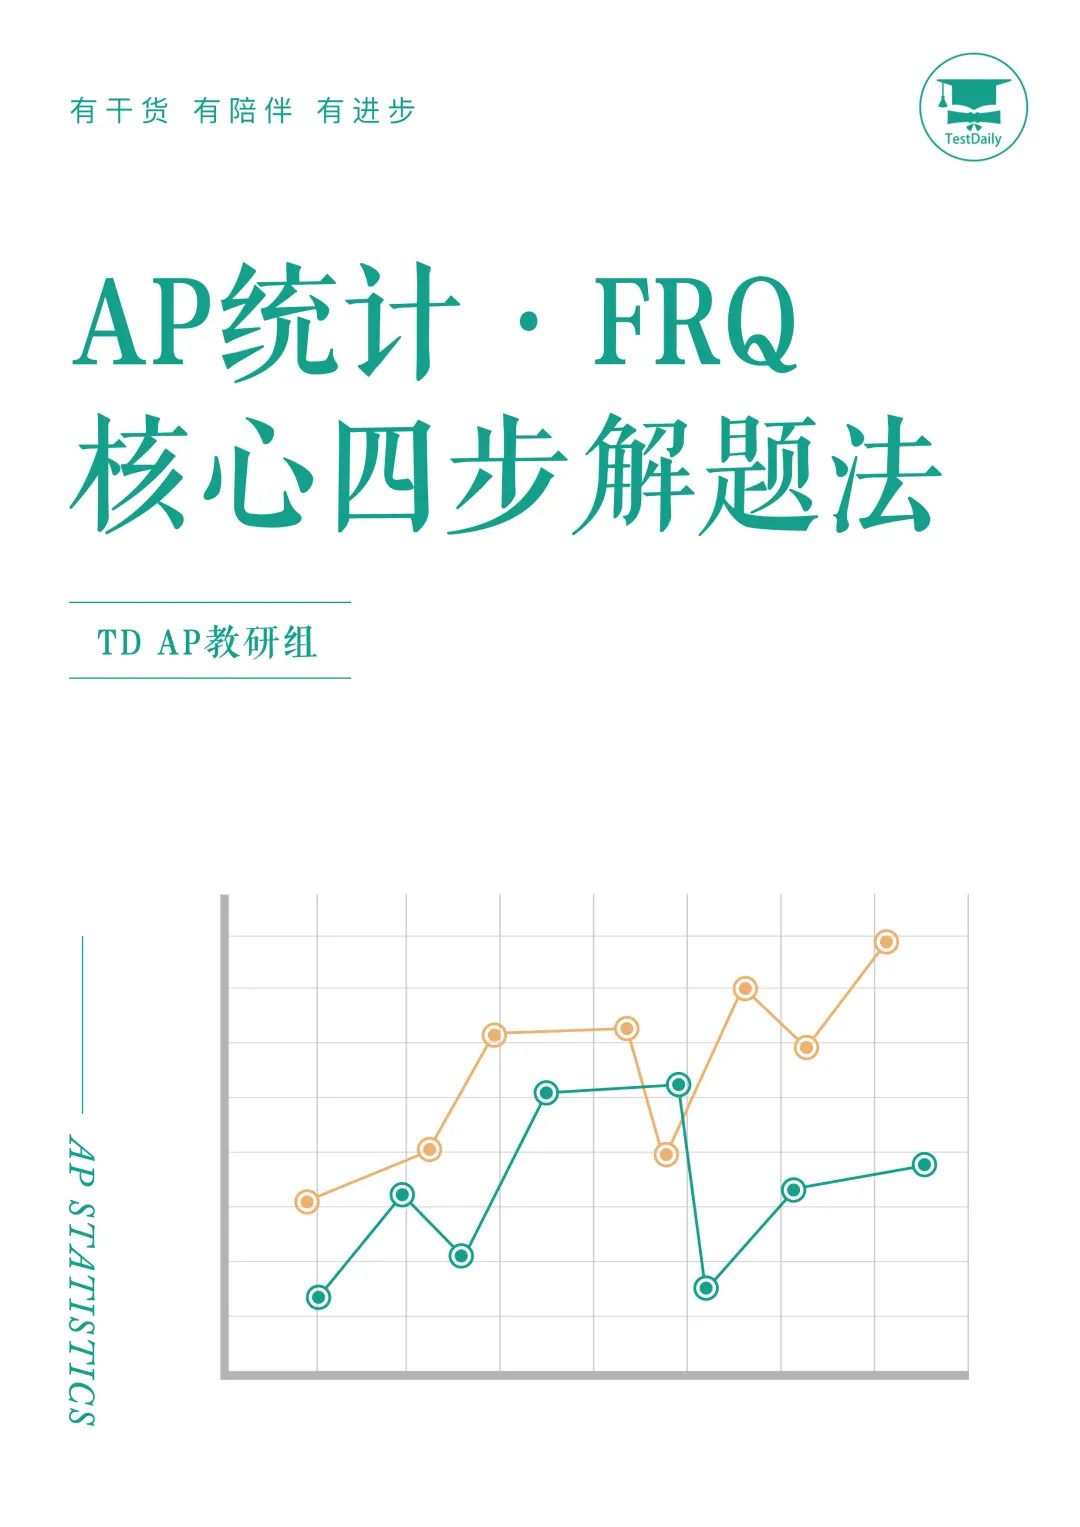 AP统计FRQ备考资源分享:AP统计FRQ核心四步解题法,带你解析题目直击考点！